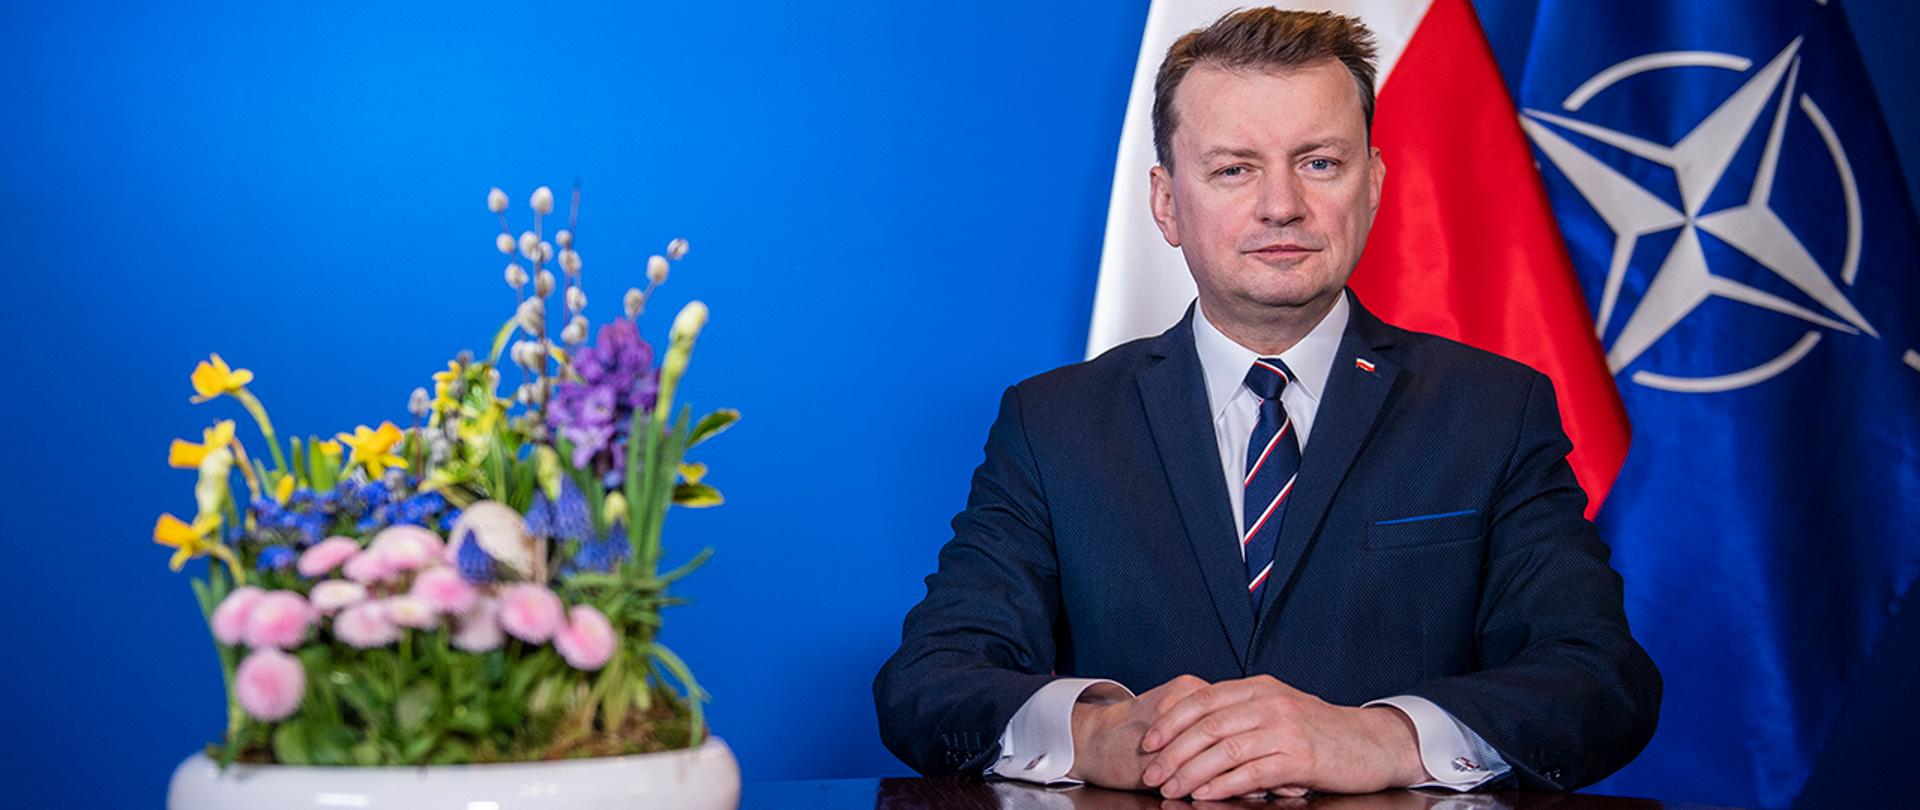 Minister obrony Narodowej Mariusz Błaszczak składa życzenia z okazji Świąt Wielkiej Nocy